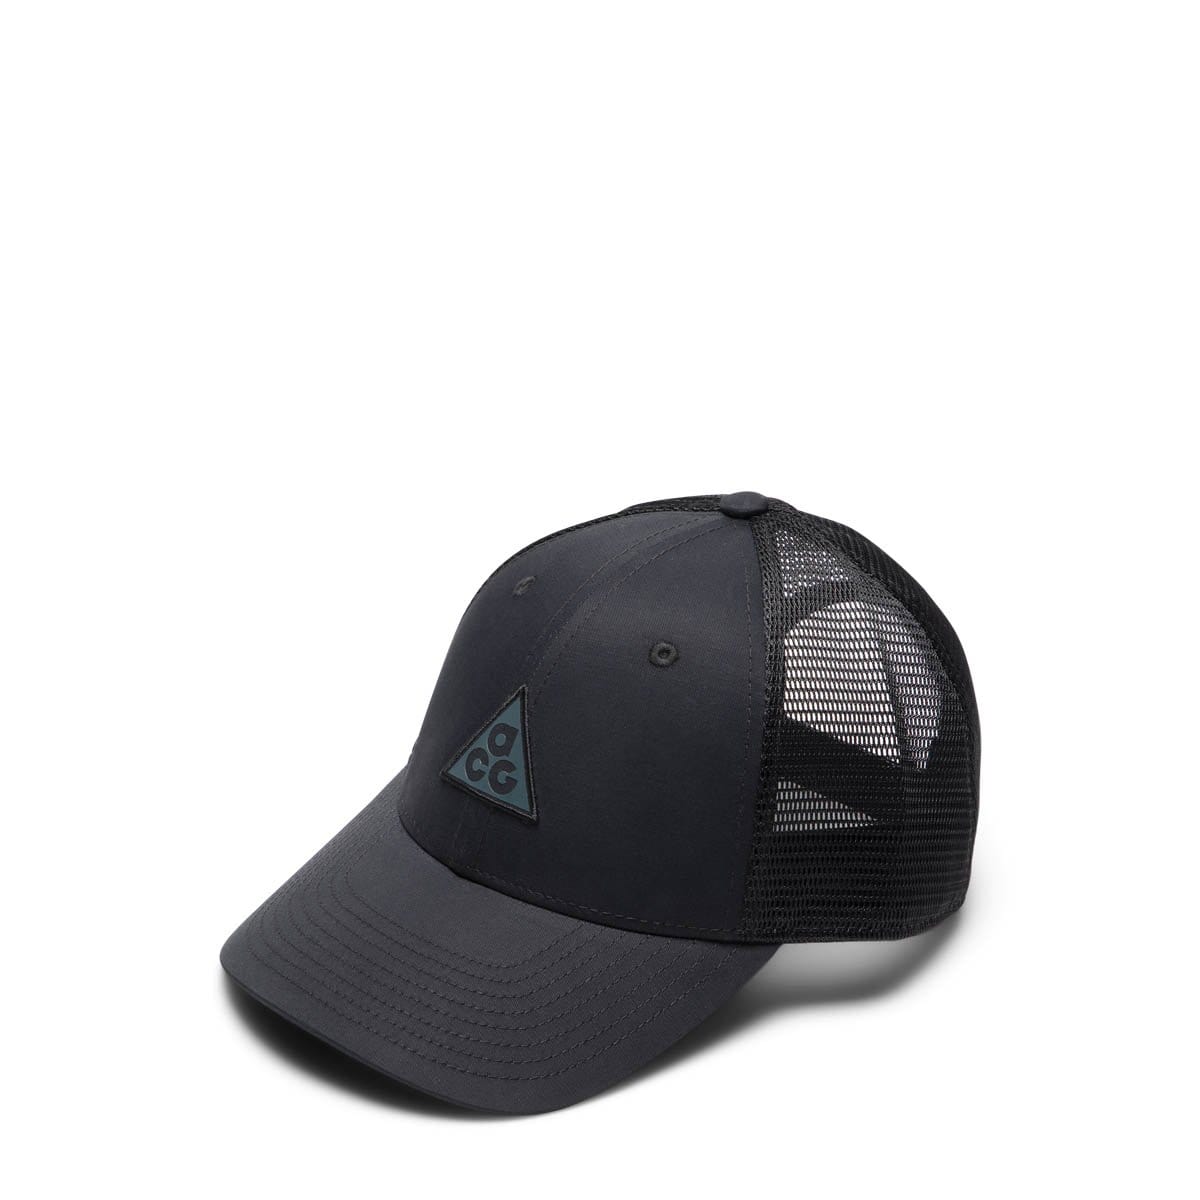 Nike Headwear BLACK [010] / OS ACG LEGACY 91 CAP